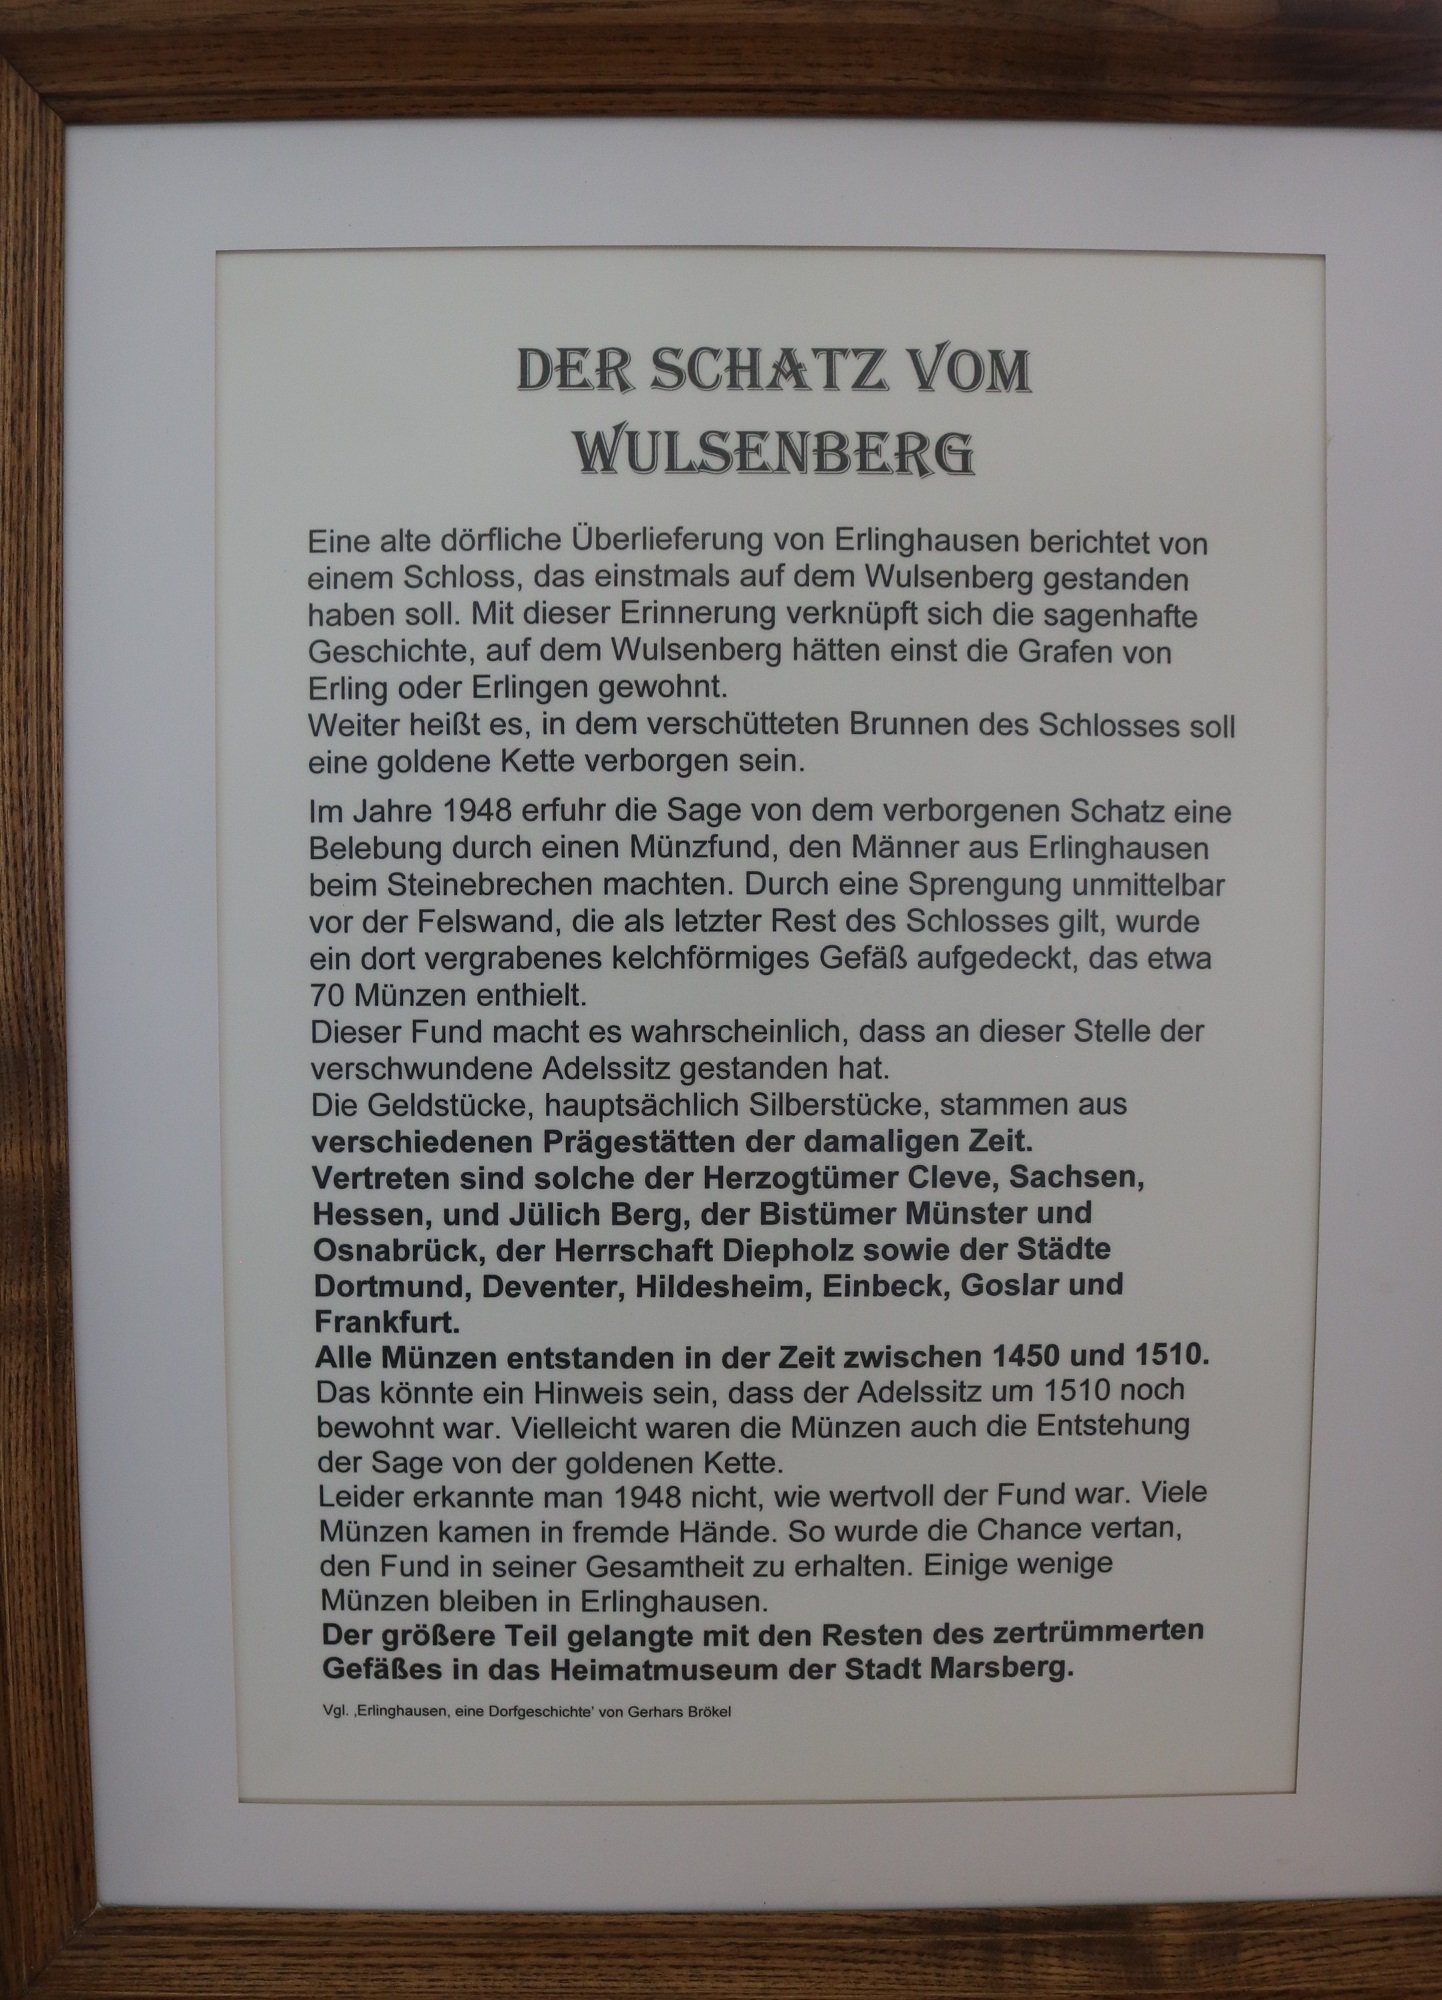 Bild: "Der Schatz vom Wülsenberg" (Museum der Stadt Marsberg CC BY-NC-SA)